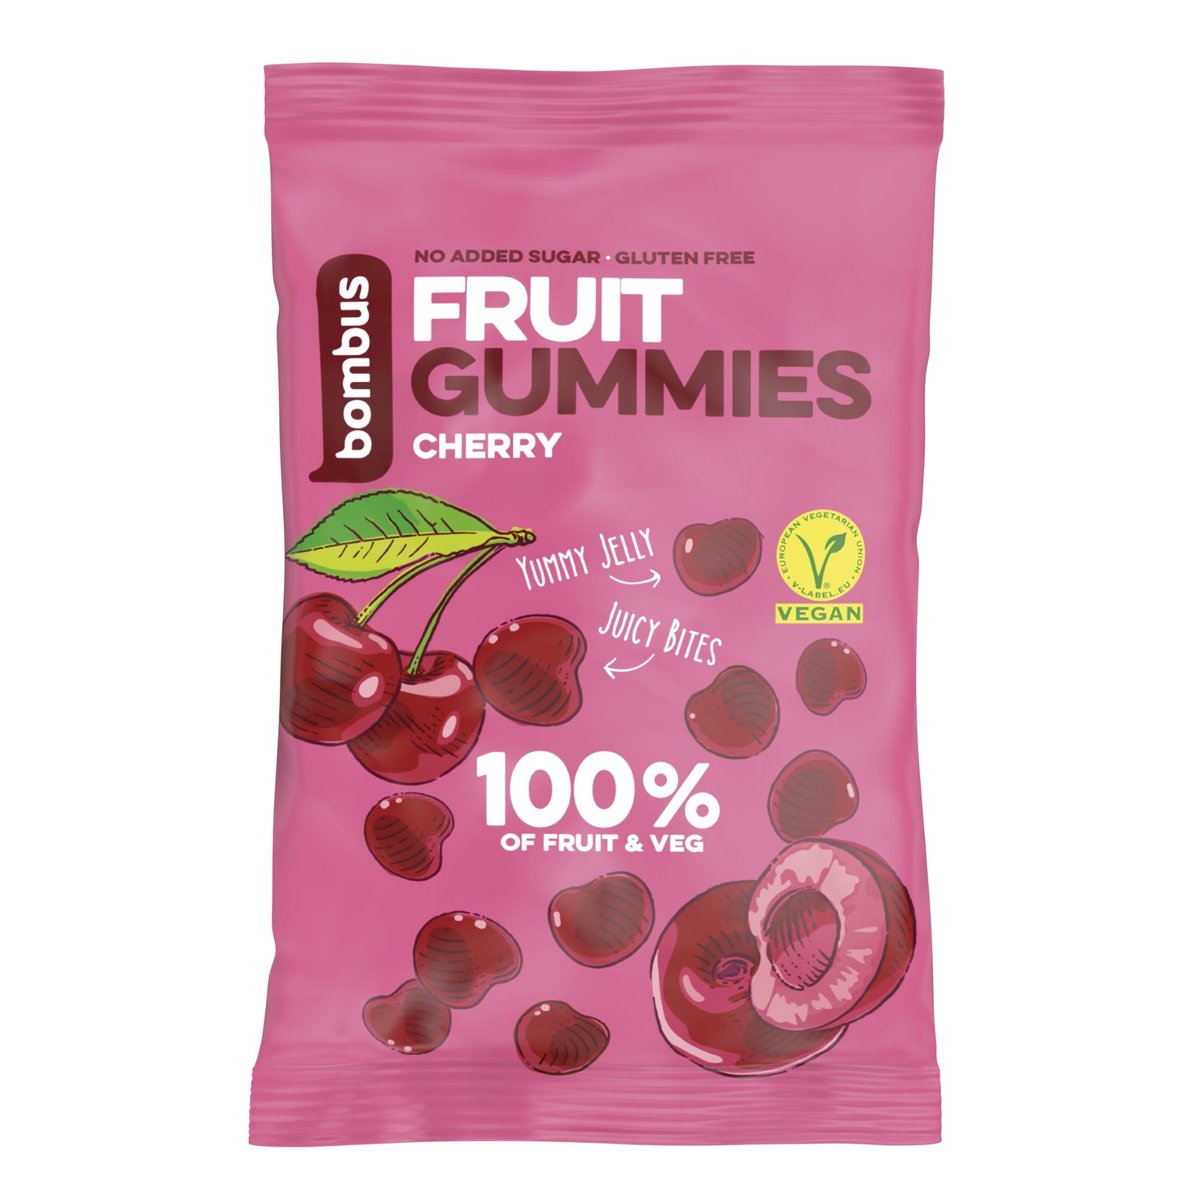 Bombus Fruit gummies višeň